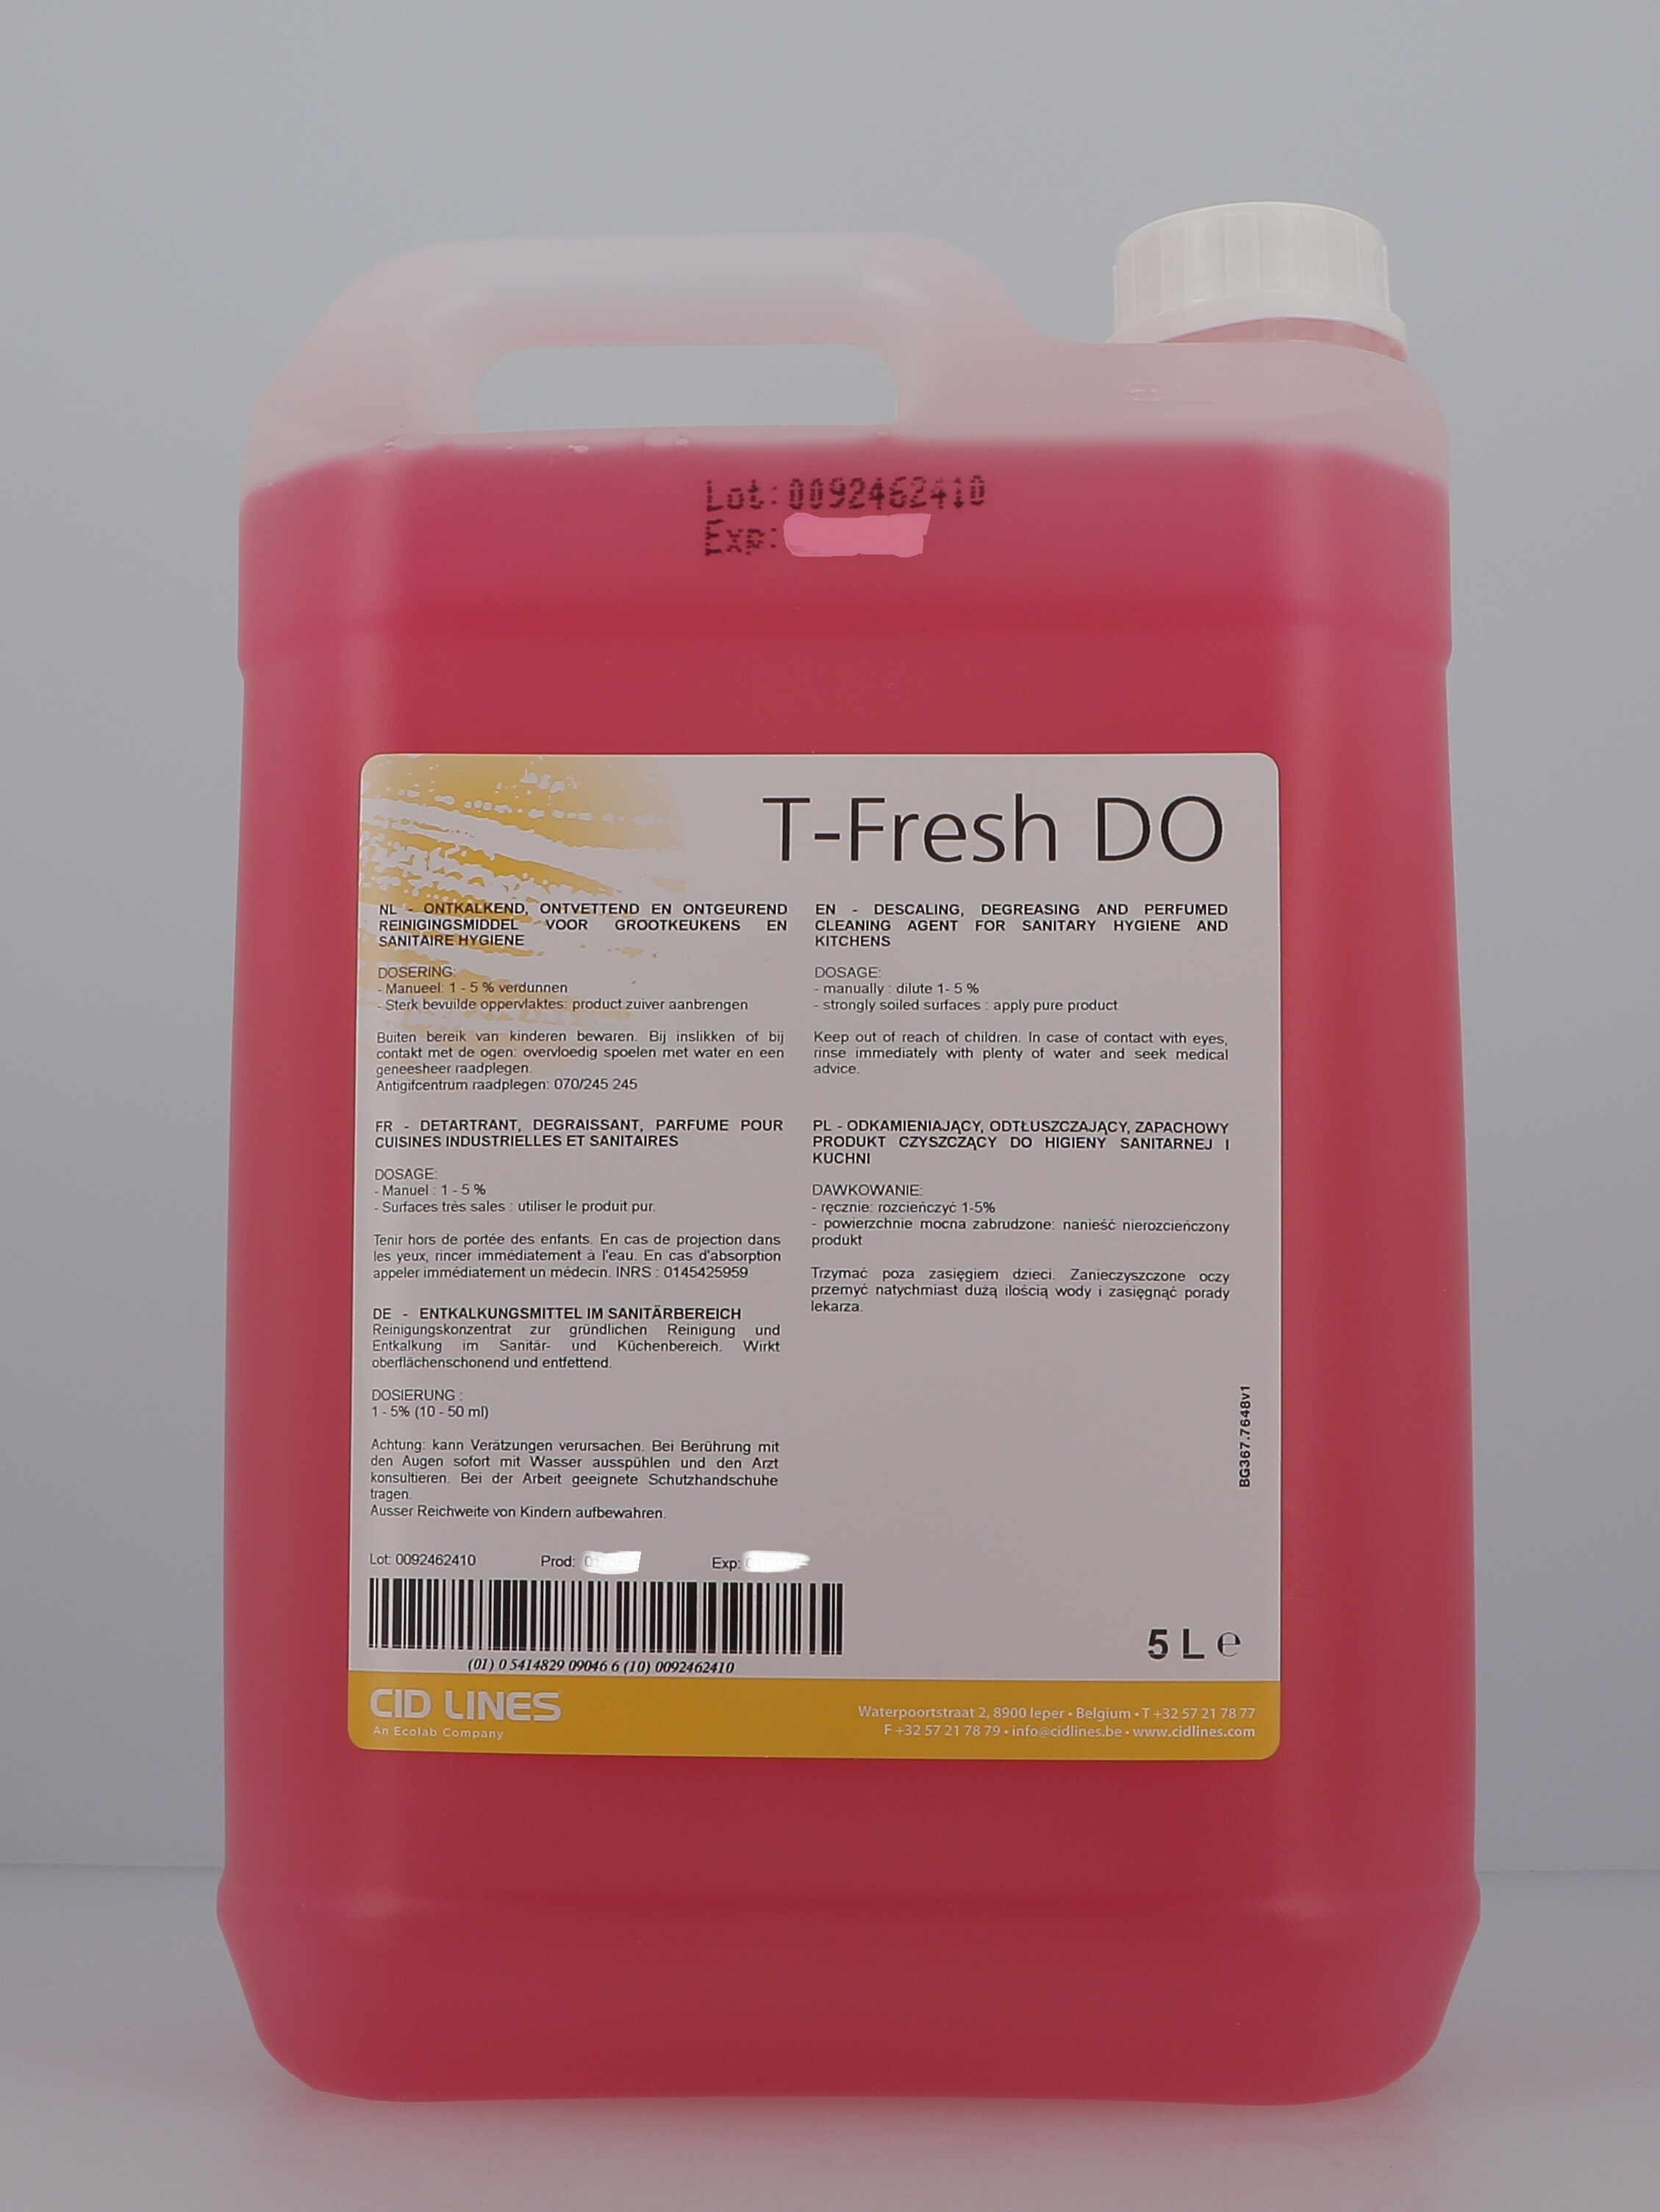 T-Fresh DO Sanitairreiniger 5L Cid Lines